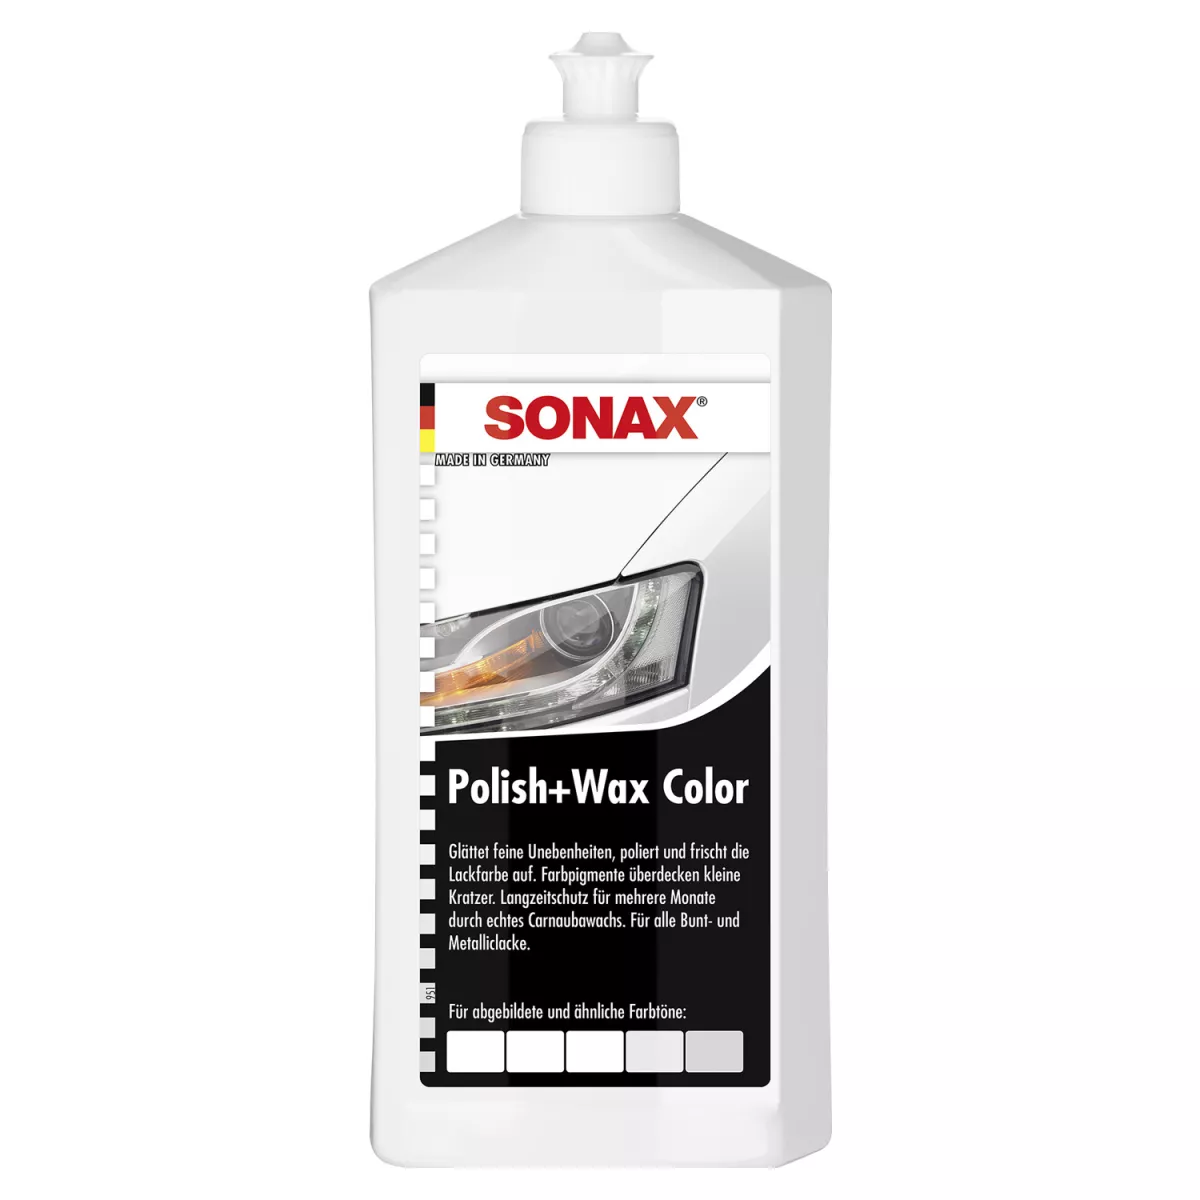 SONAX Polish+Wax Color Farbpolitur 500 Milliliter weiß